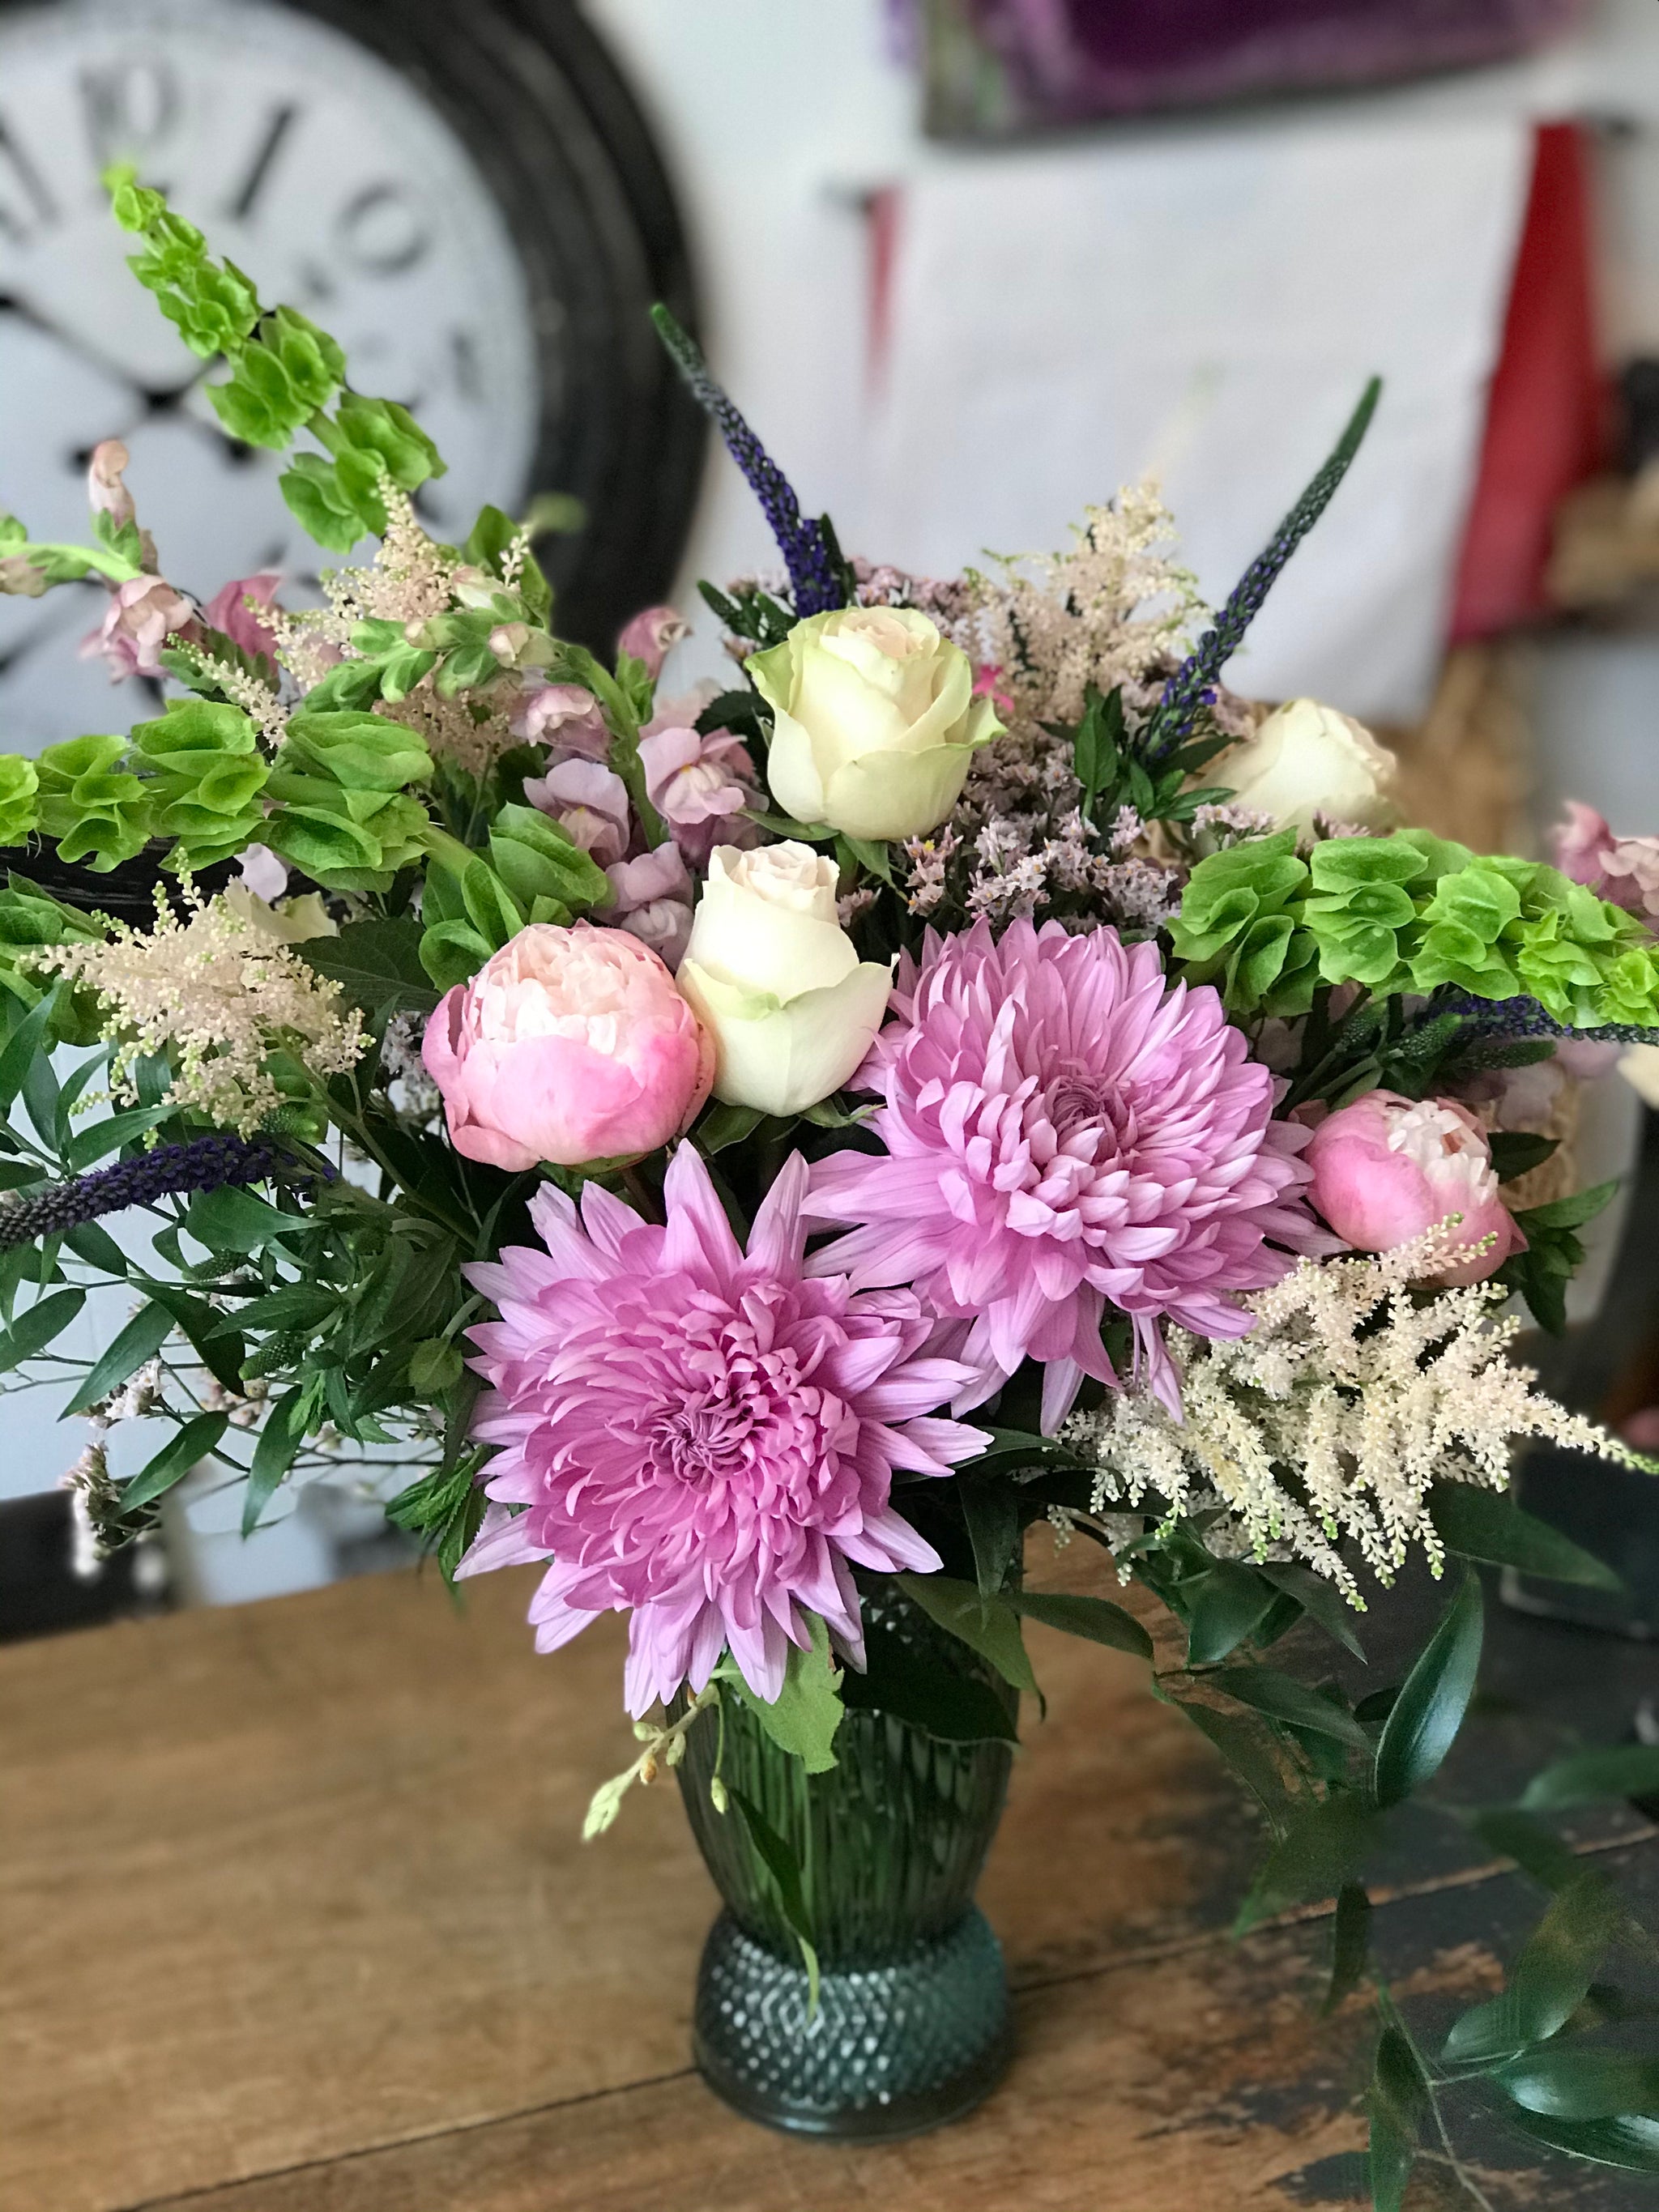 Floral Arrangements - Vase